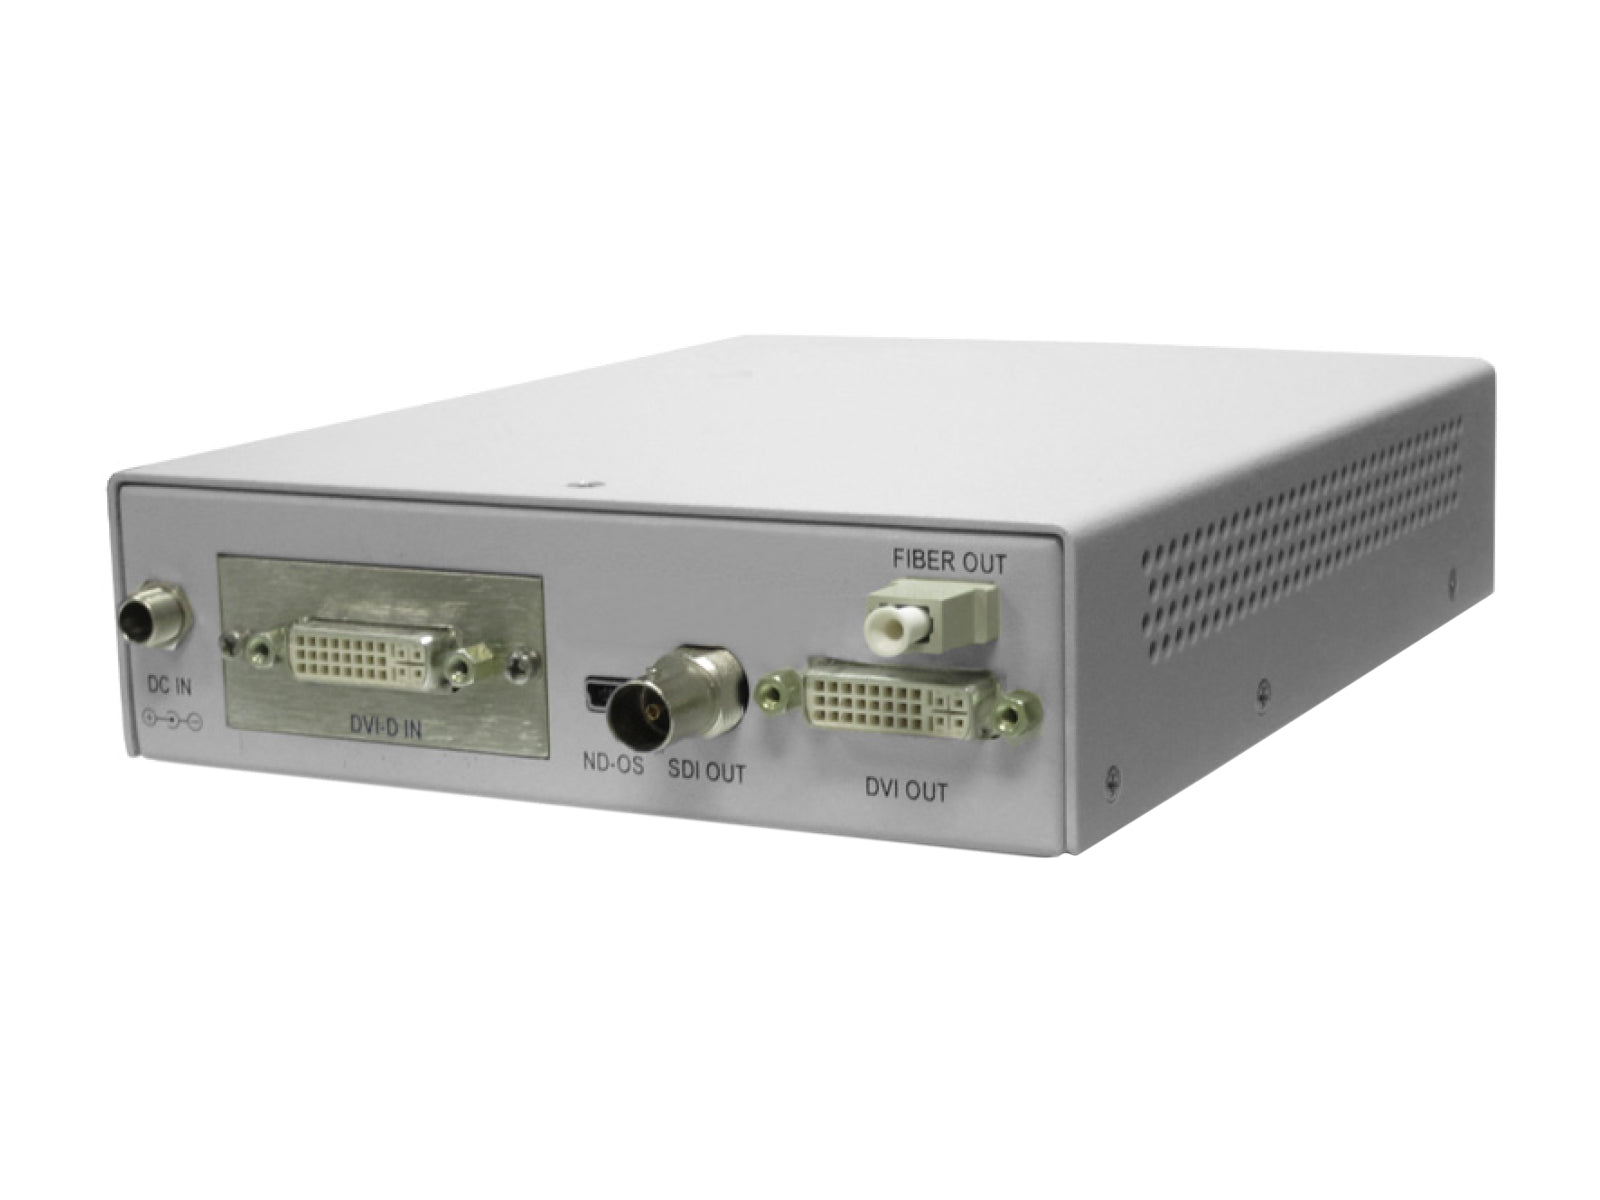 NDS ScaleOR ND-00B-014/0 Système de mise à l'échelle vidéo de qualité médicale (90T0013) Monitors.com